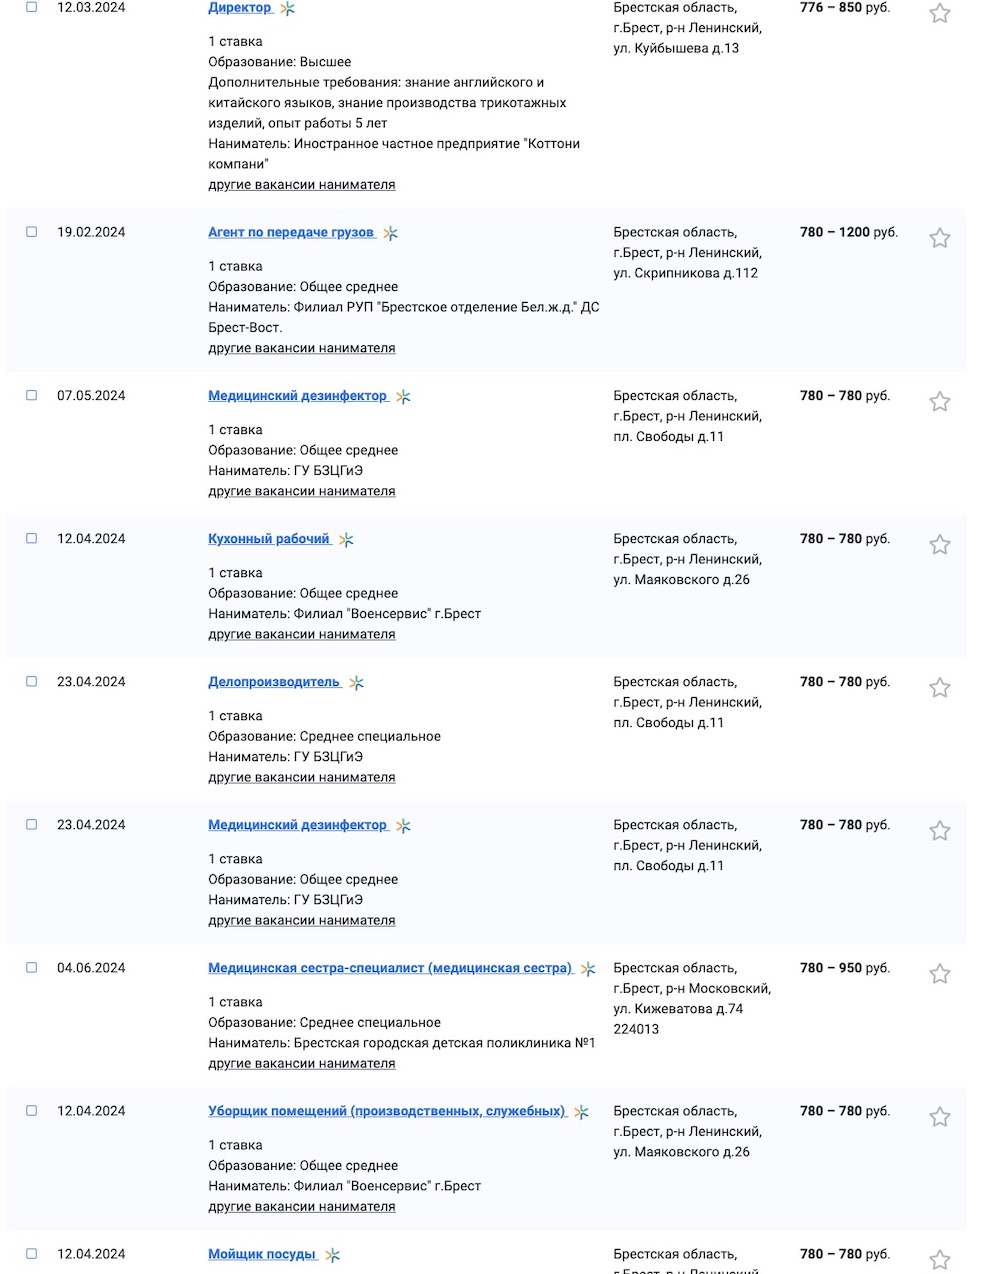 Скриншот с сайта Государственной службы занятости Беларуси.